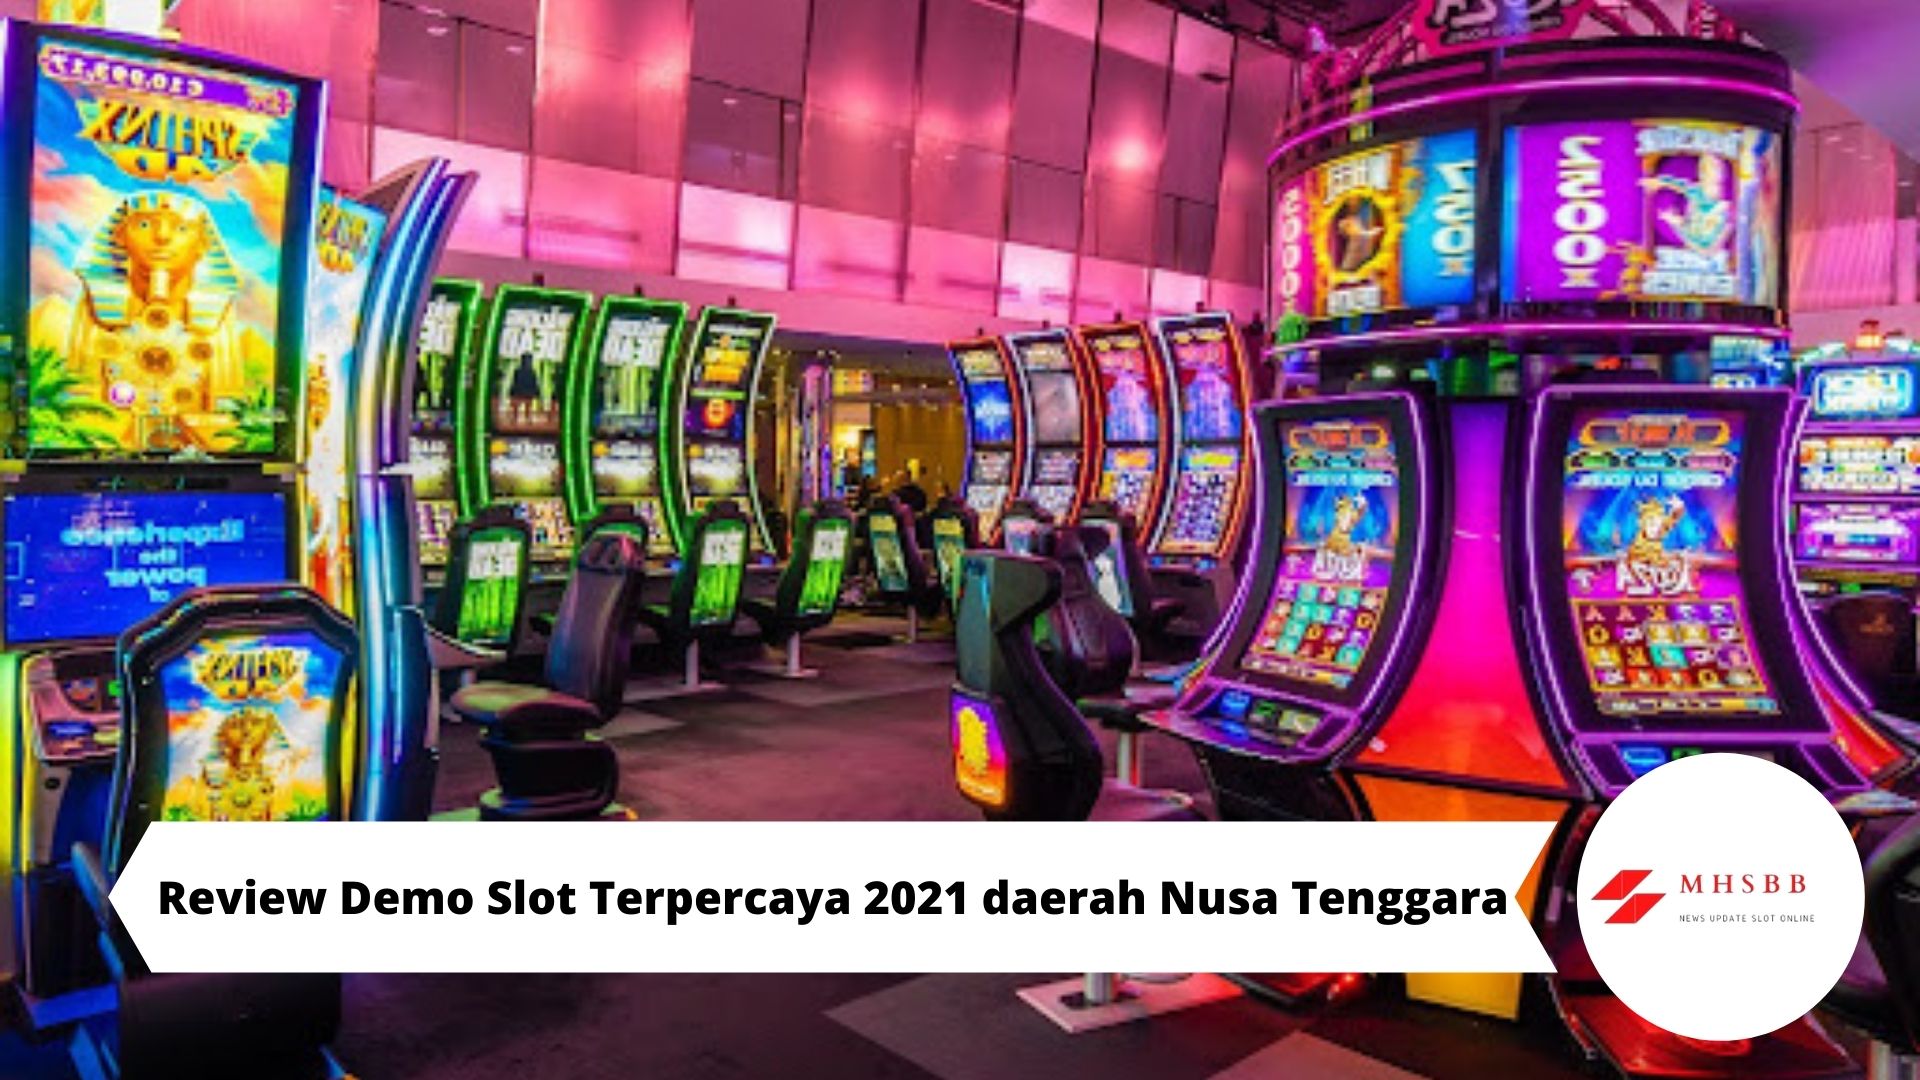 Review Demo Slot Terpercaya 2021 daerah Nusa Tenggara